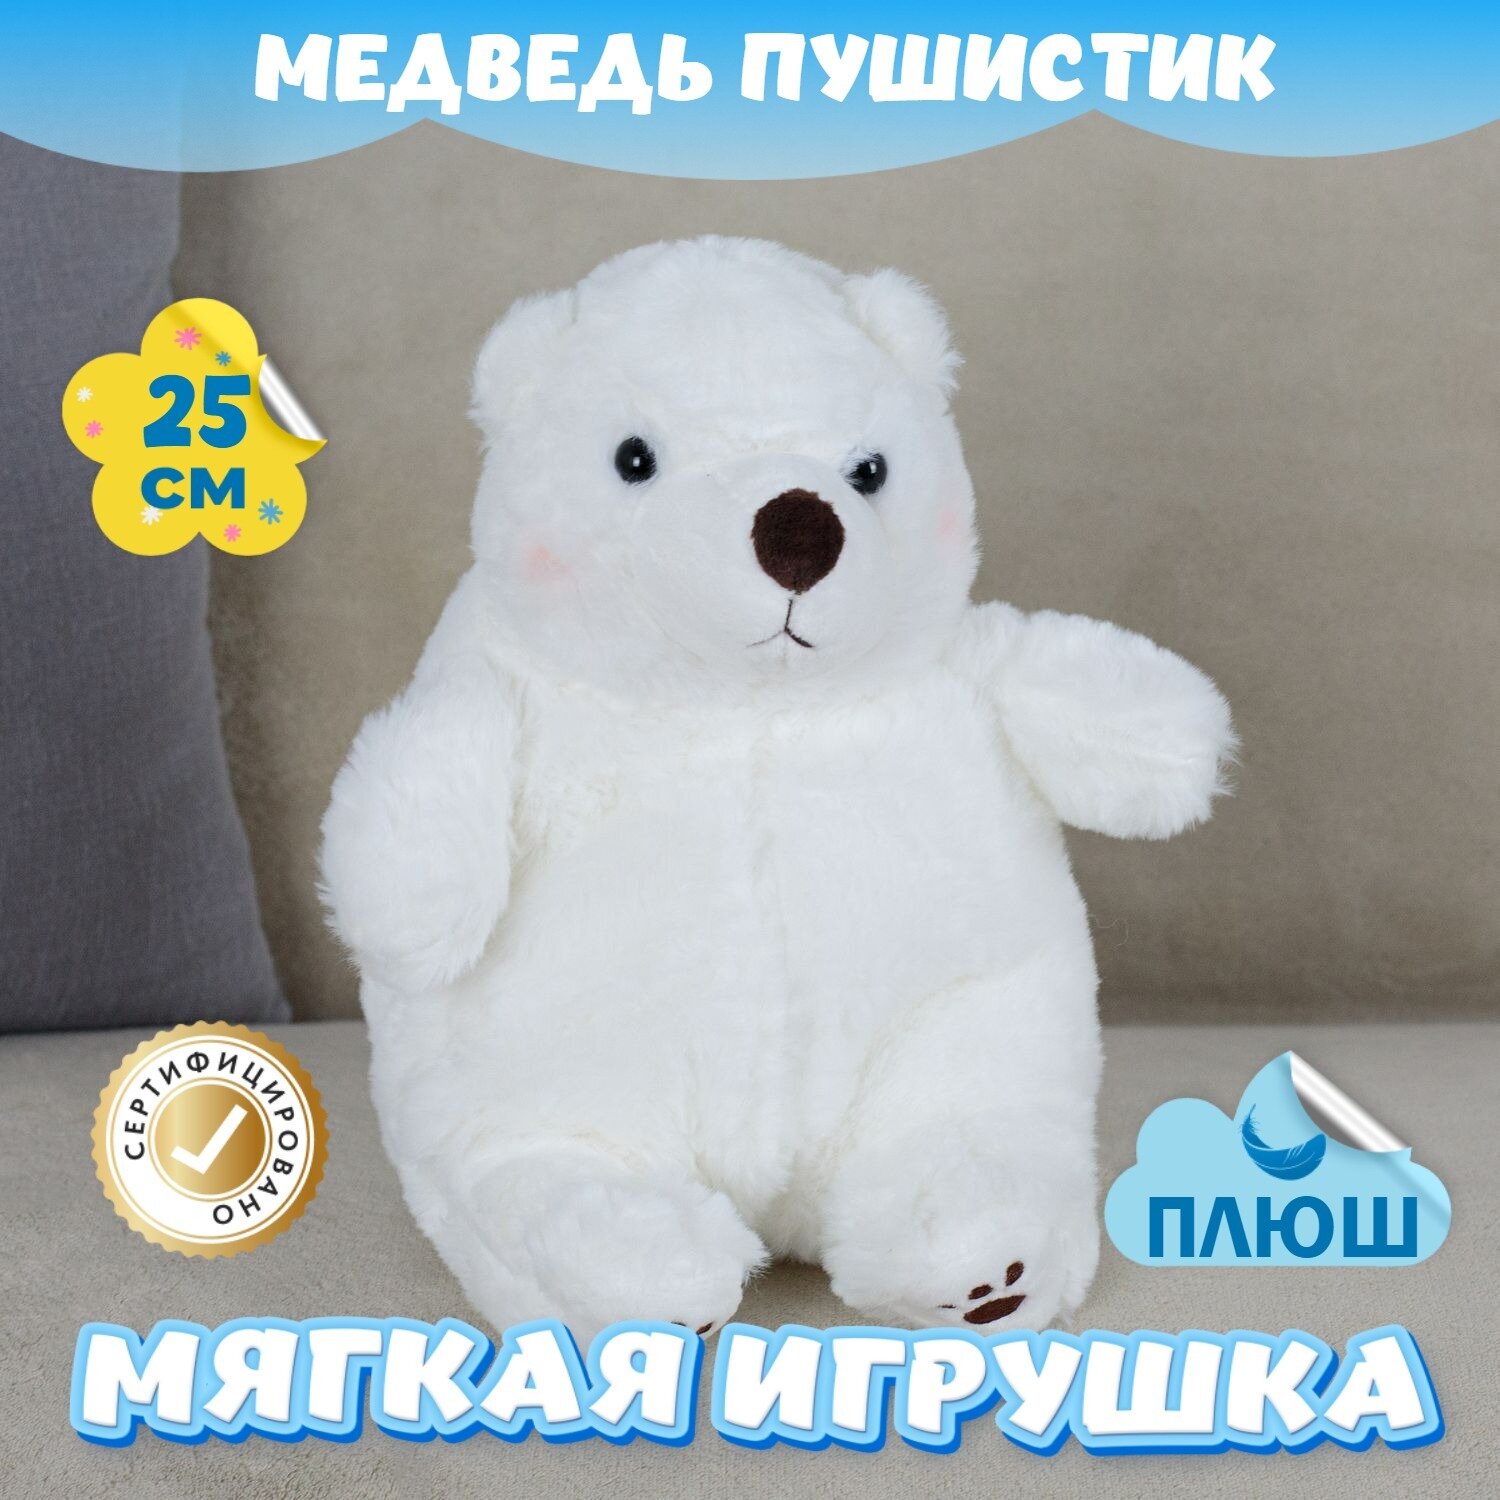 Мягкая игрушка Медведь Пушистик для девочек мальчиков / Плюшевый Мишка для малышей KiDWoW белый 25см